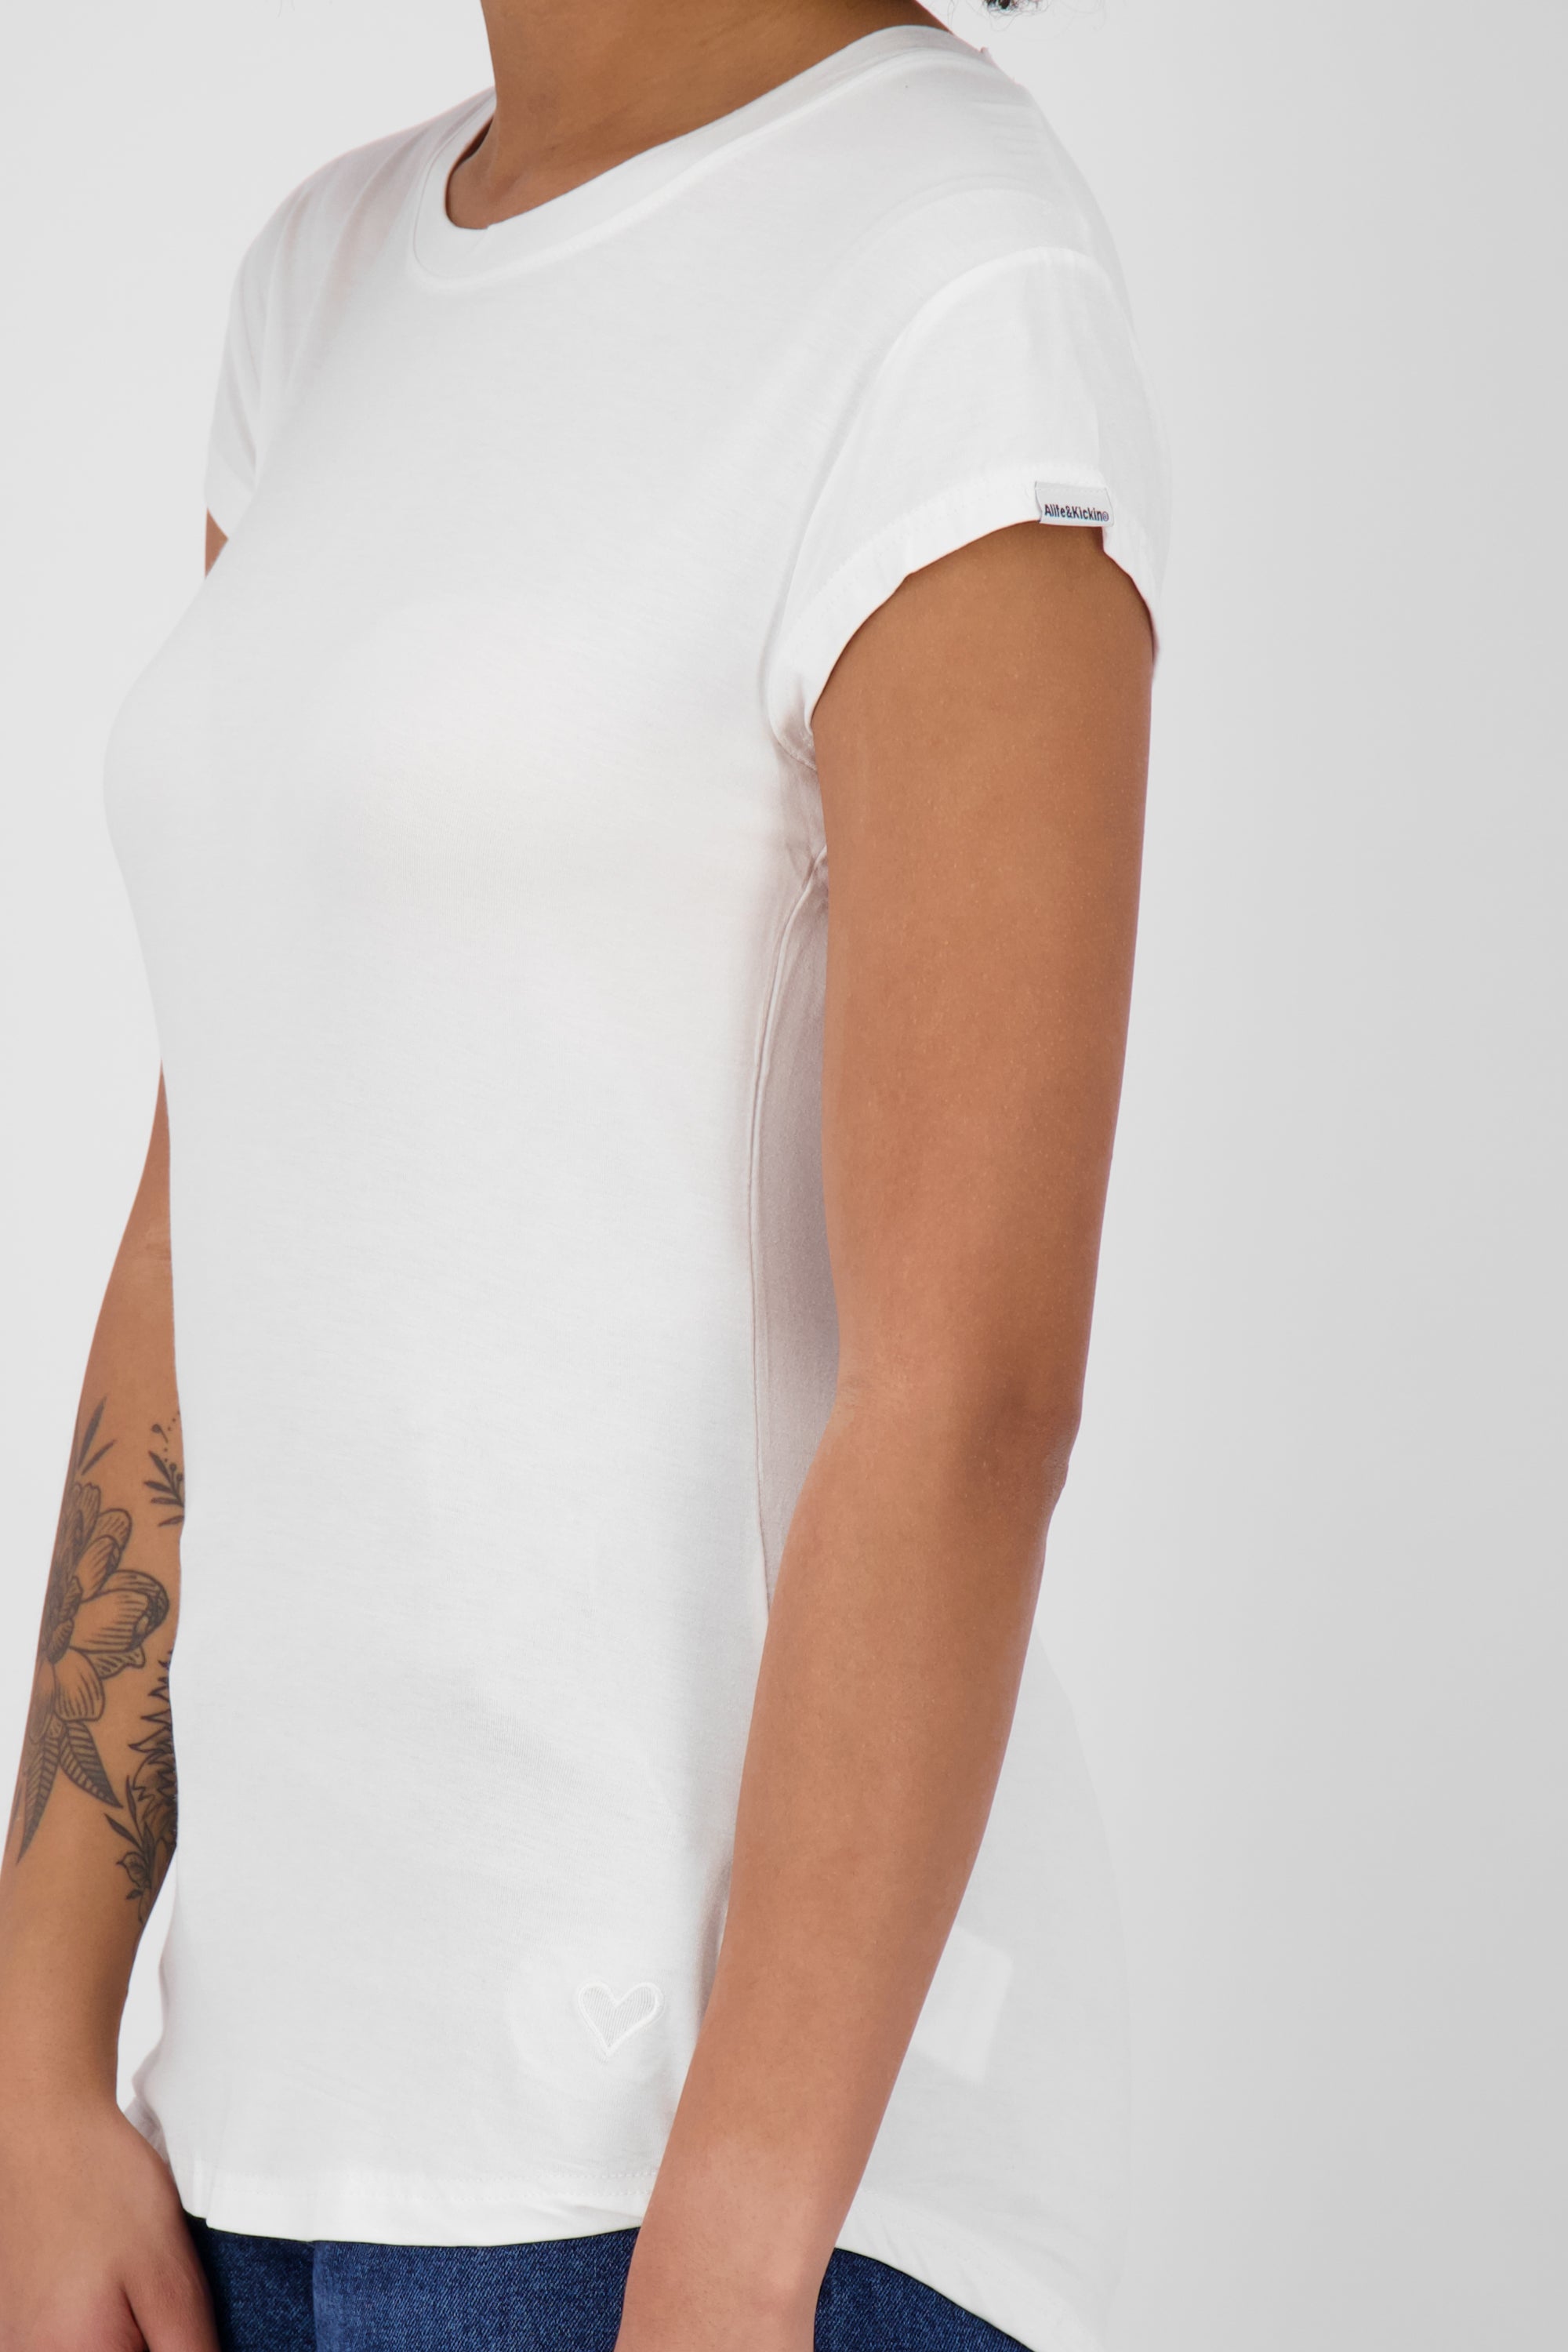 Vielseitiges Basic-Shirt für stylische Outfits: MimmyAK A von Alife and Kickin Weiß